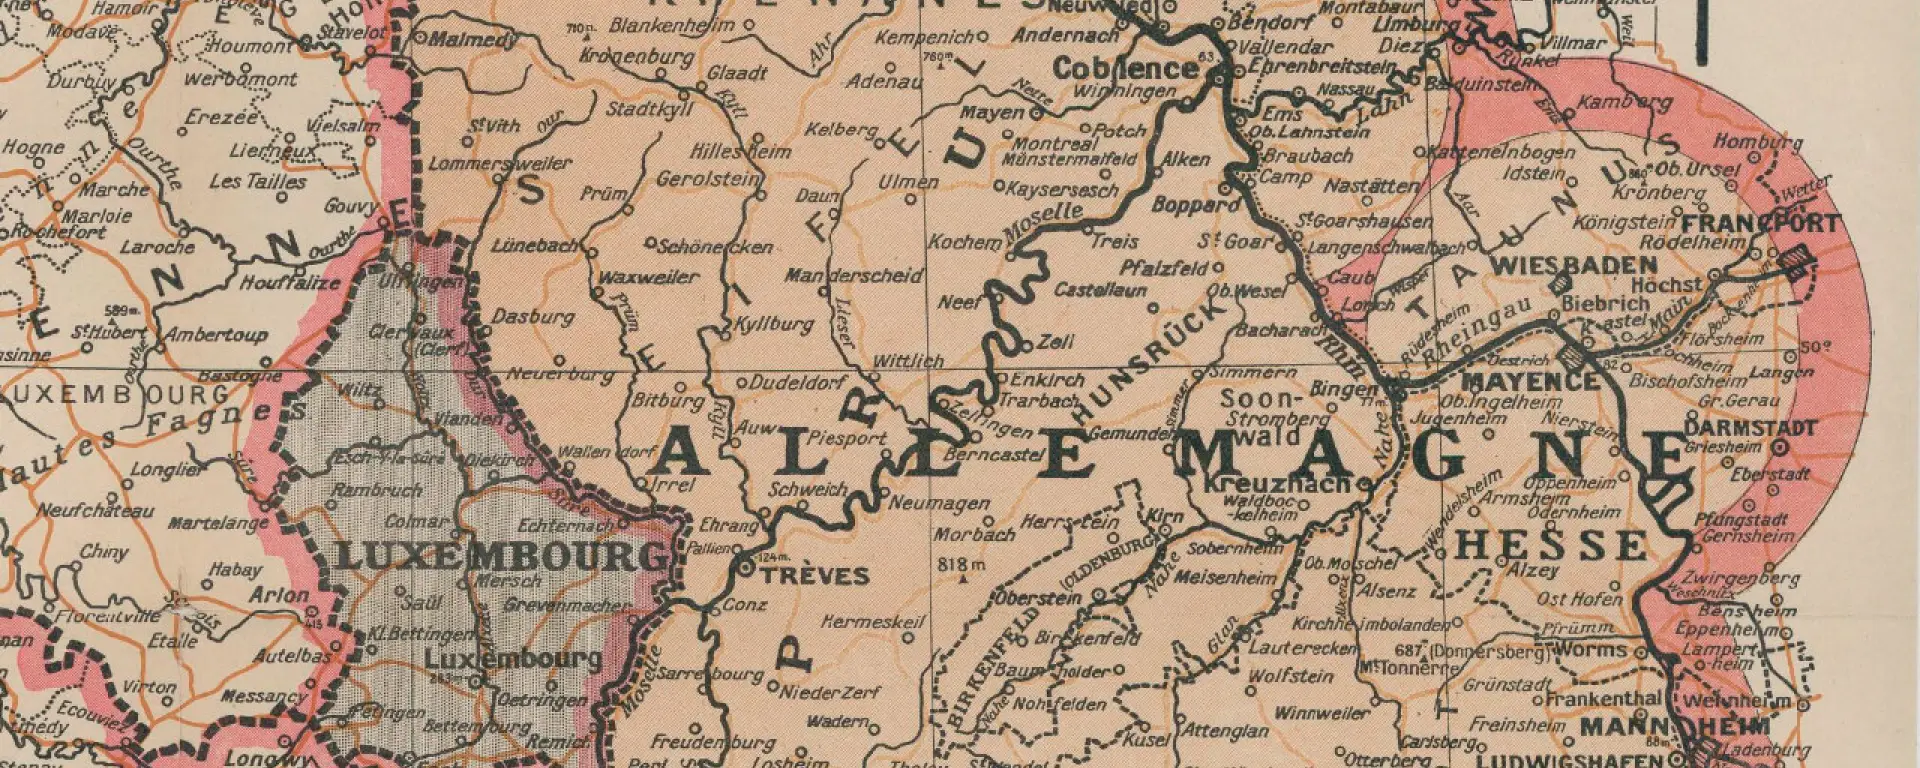 Karte der Besatzungszone und des Mainzer Brückenkopfs